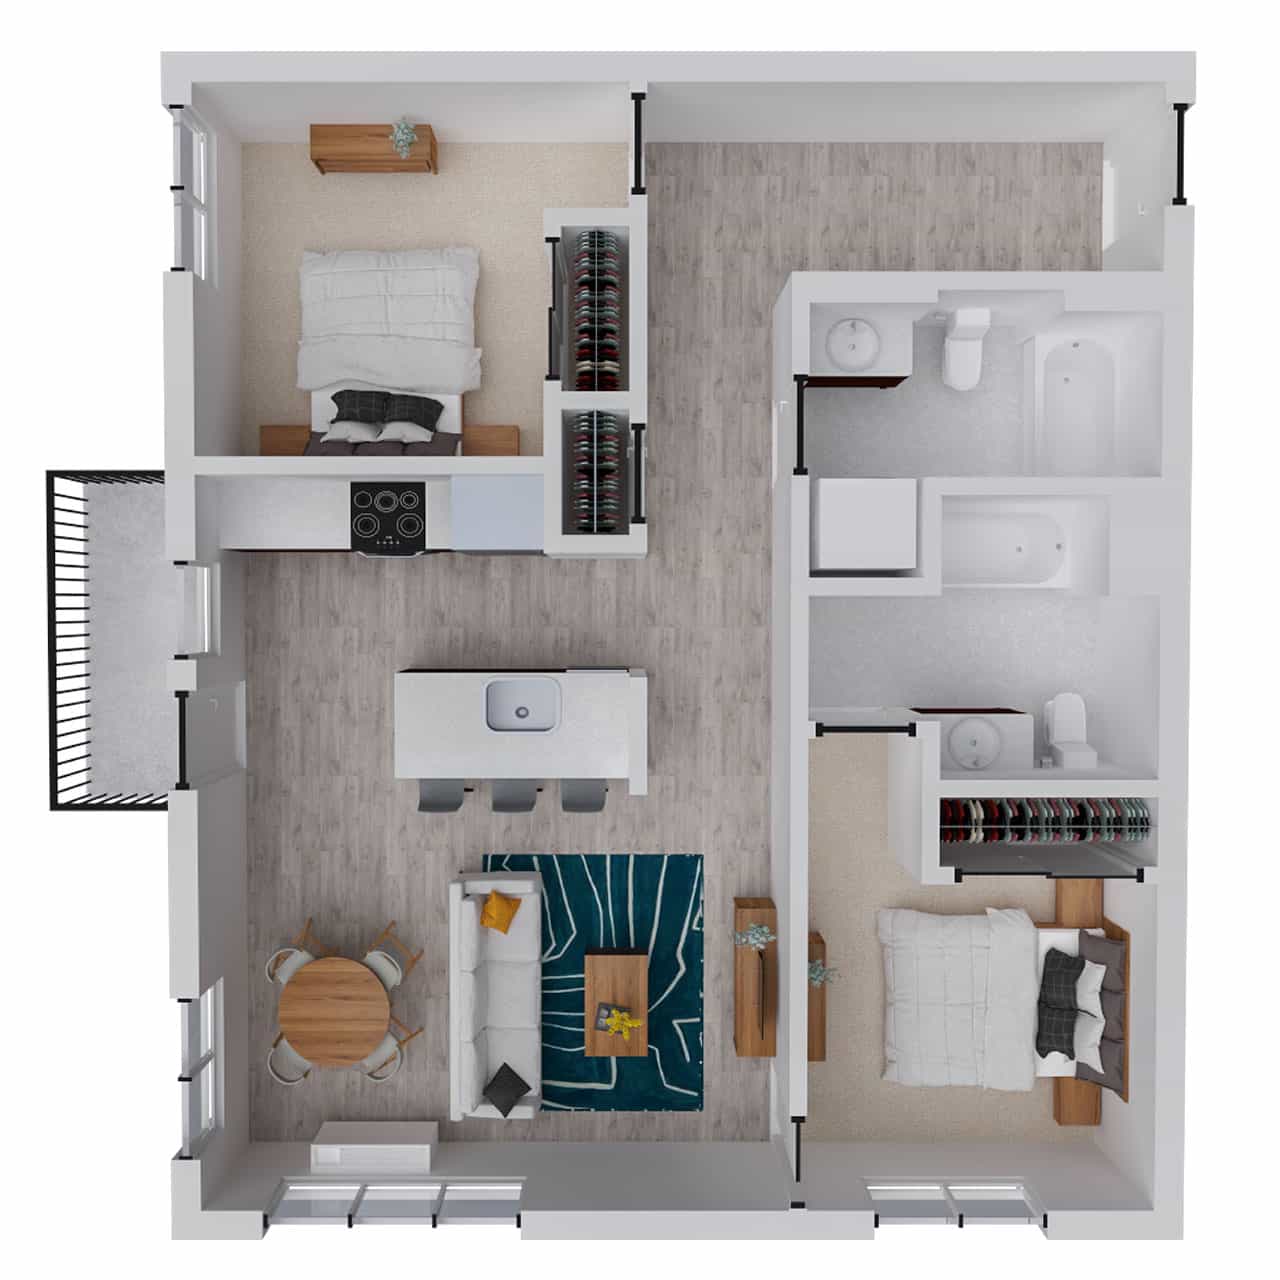 Attwell, B4 floor plan, 2 bedroom, 2 bath.